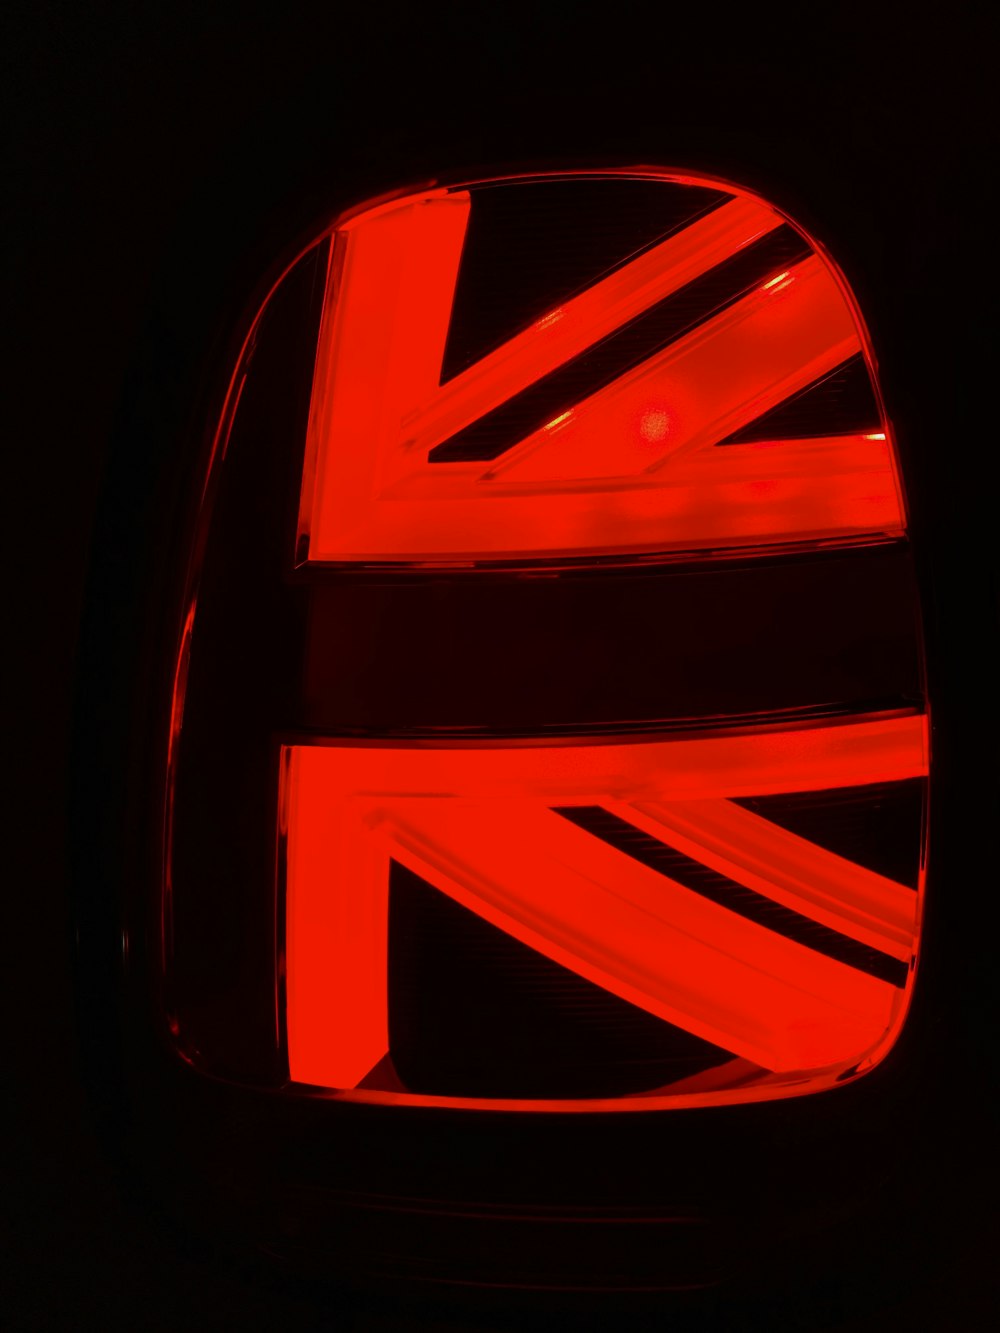 Un emblème de voiture avec le drapeau britannique peint dessus